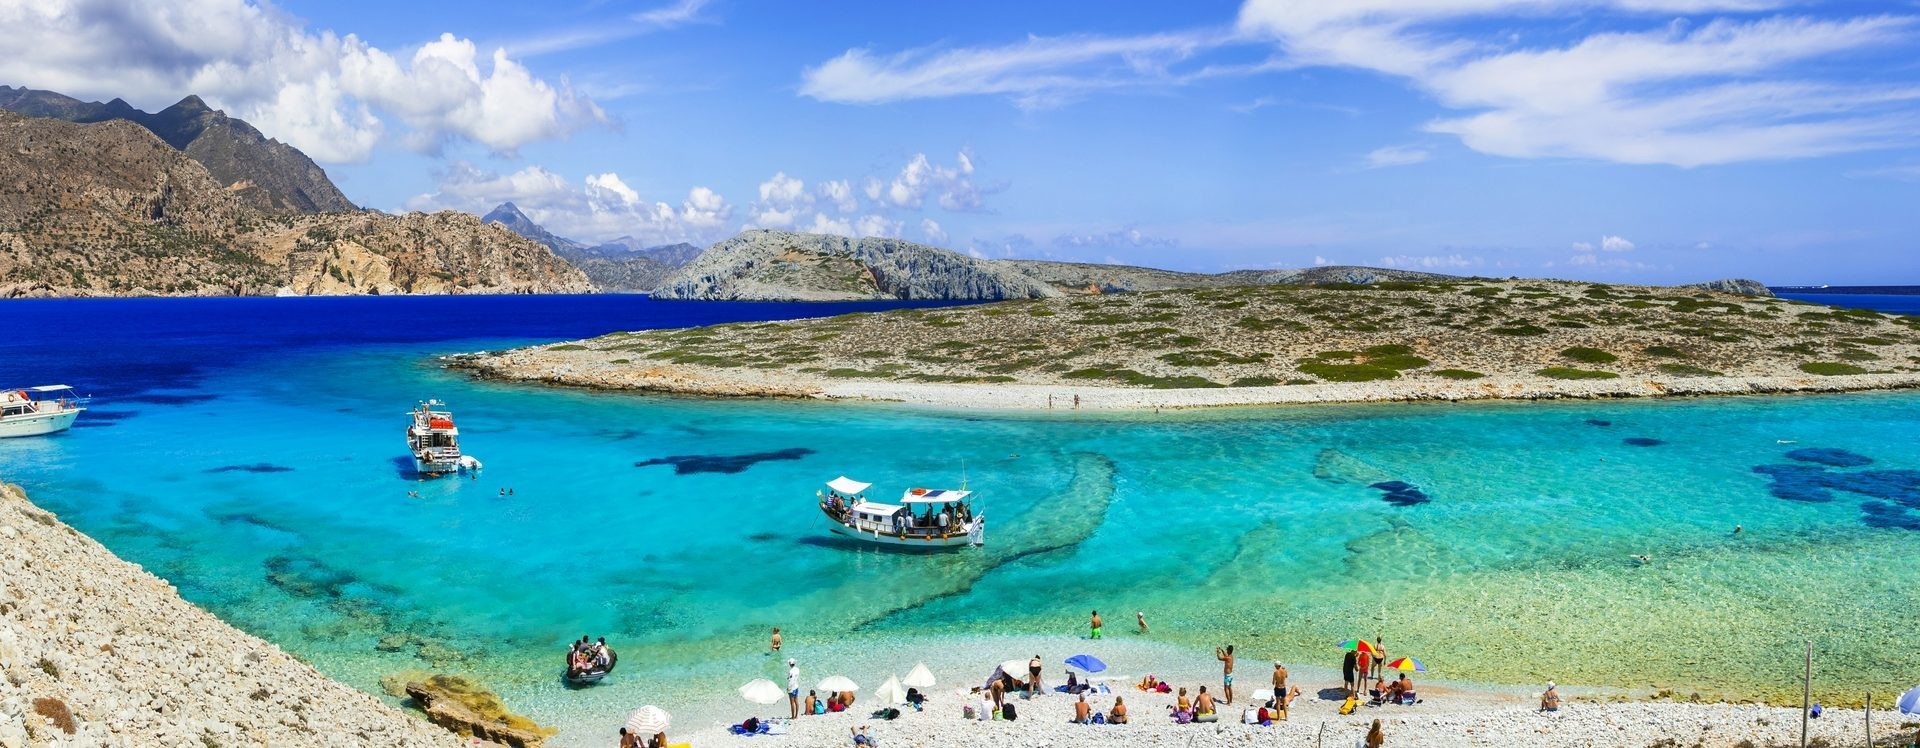 Gulet cruise: Marmaris and Fethiye, Turkey